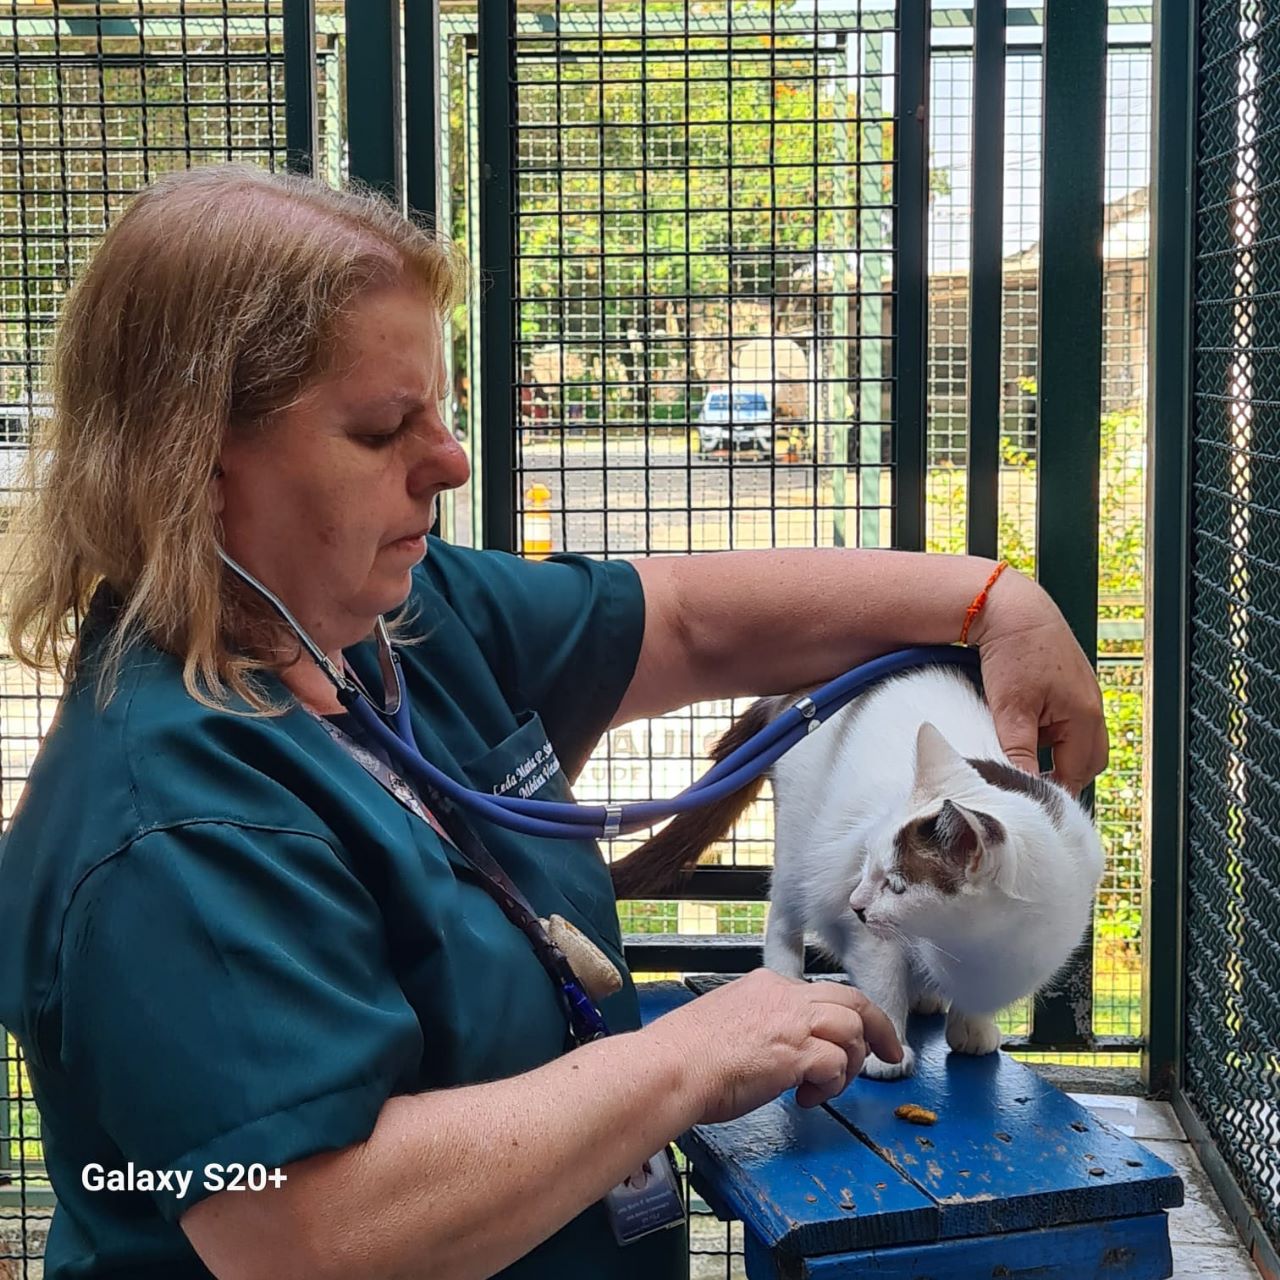 Na imagem, a veterinária Leda está examinando um gato, branco com manchas marrons, com um estetoscópio, num espaço protegido por grades